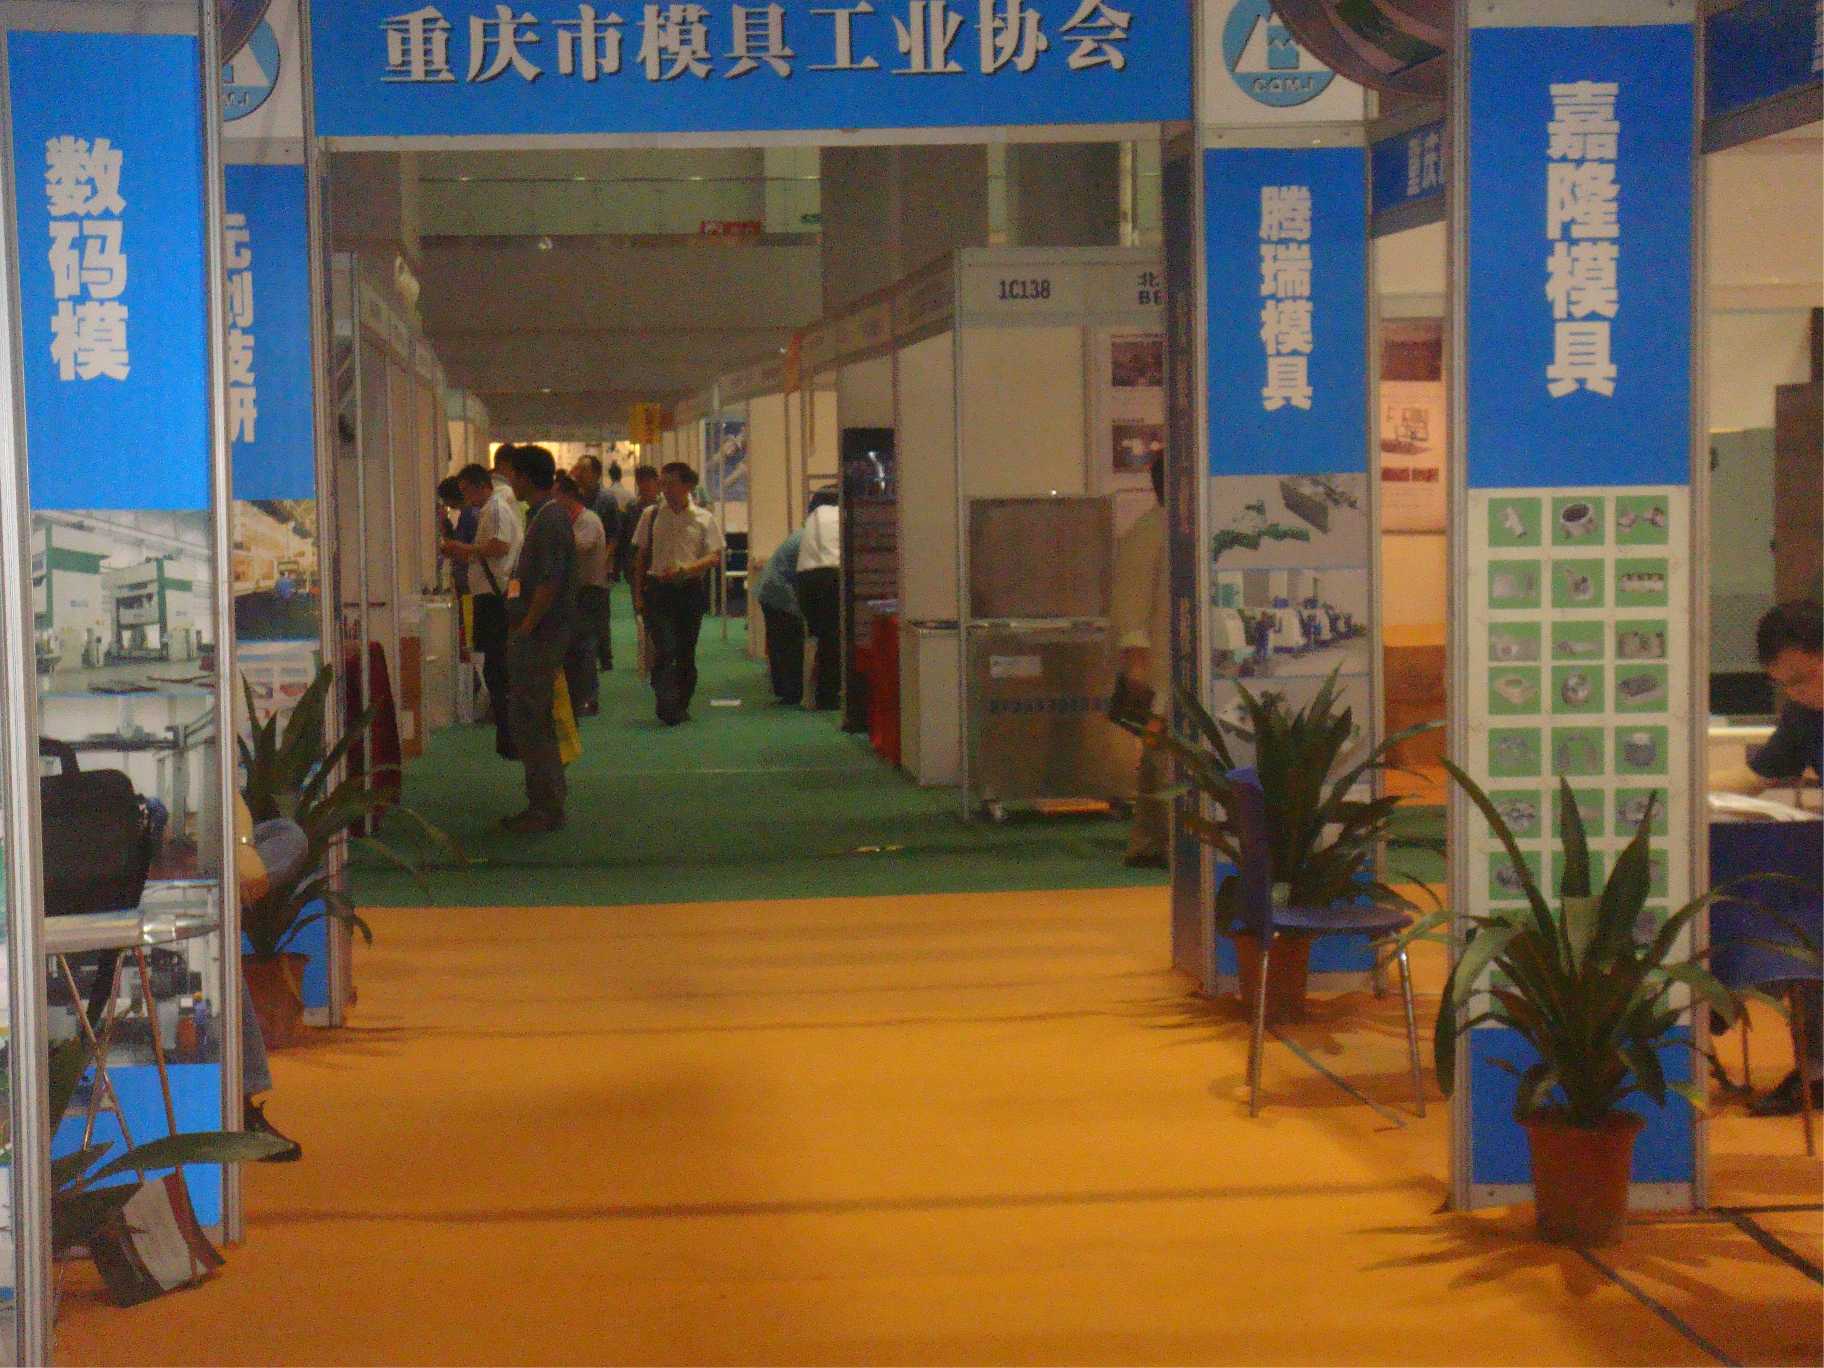 2011模具工业（重庆)展览会